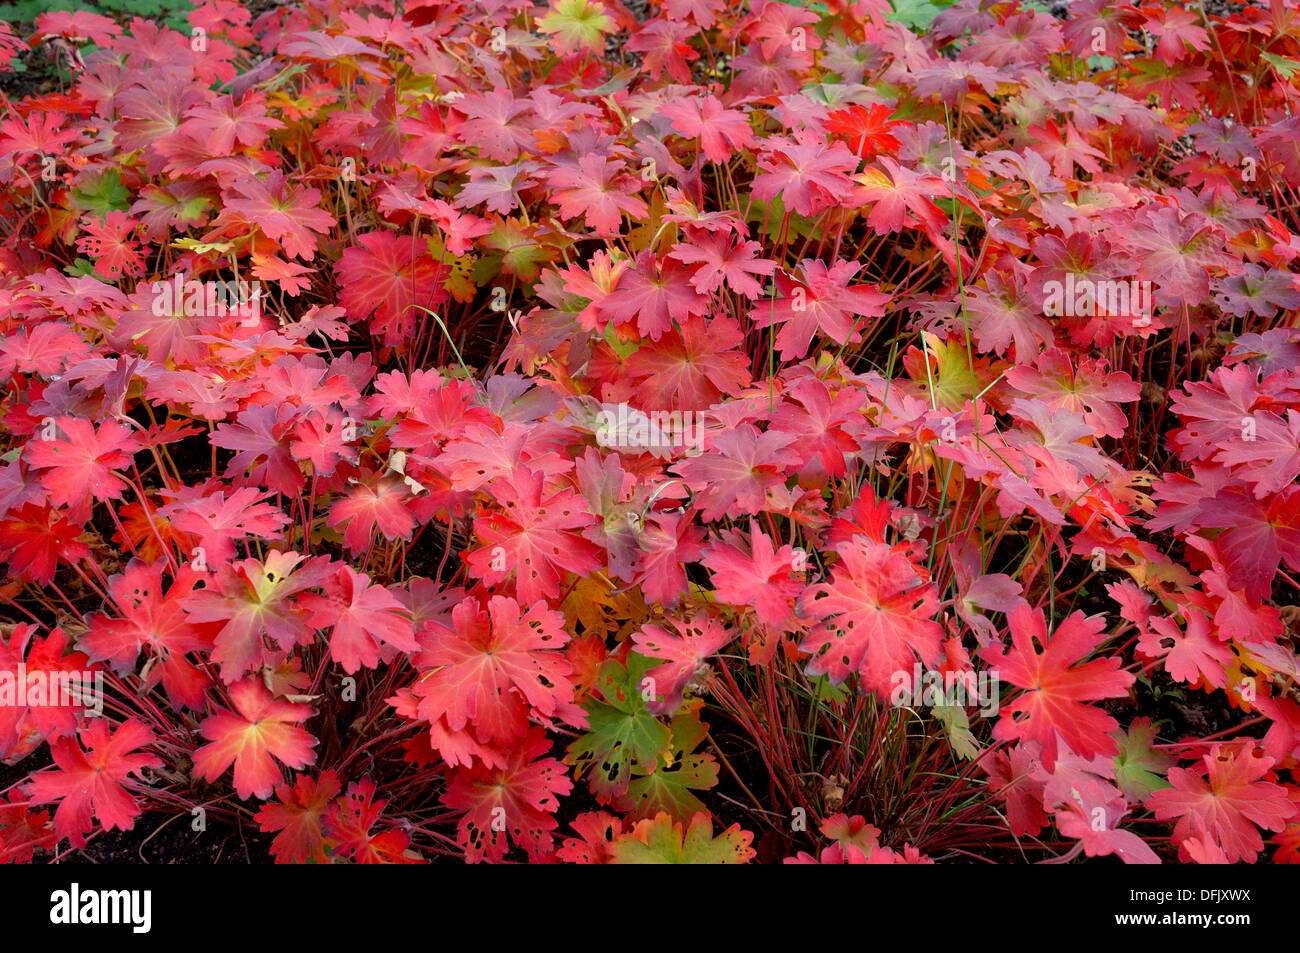 Geranium wlassovianum leaves turned red in autumn Stock Photo